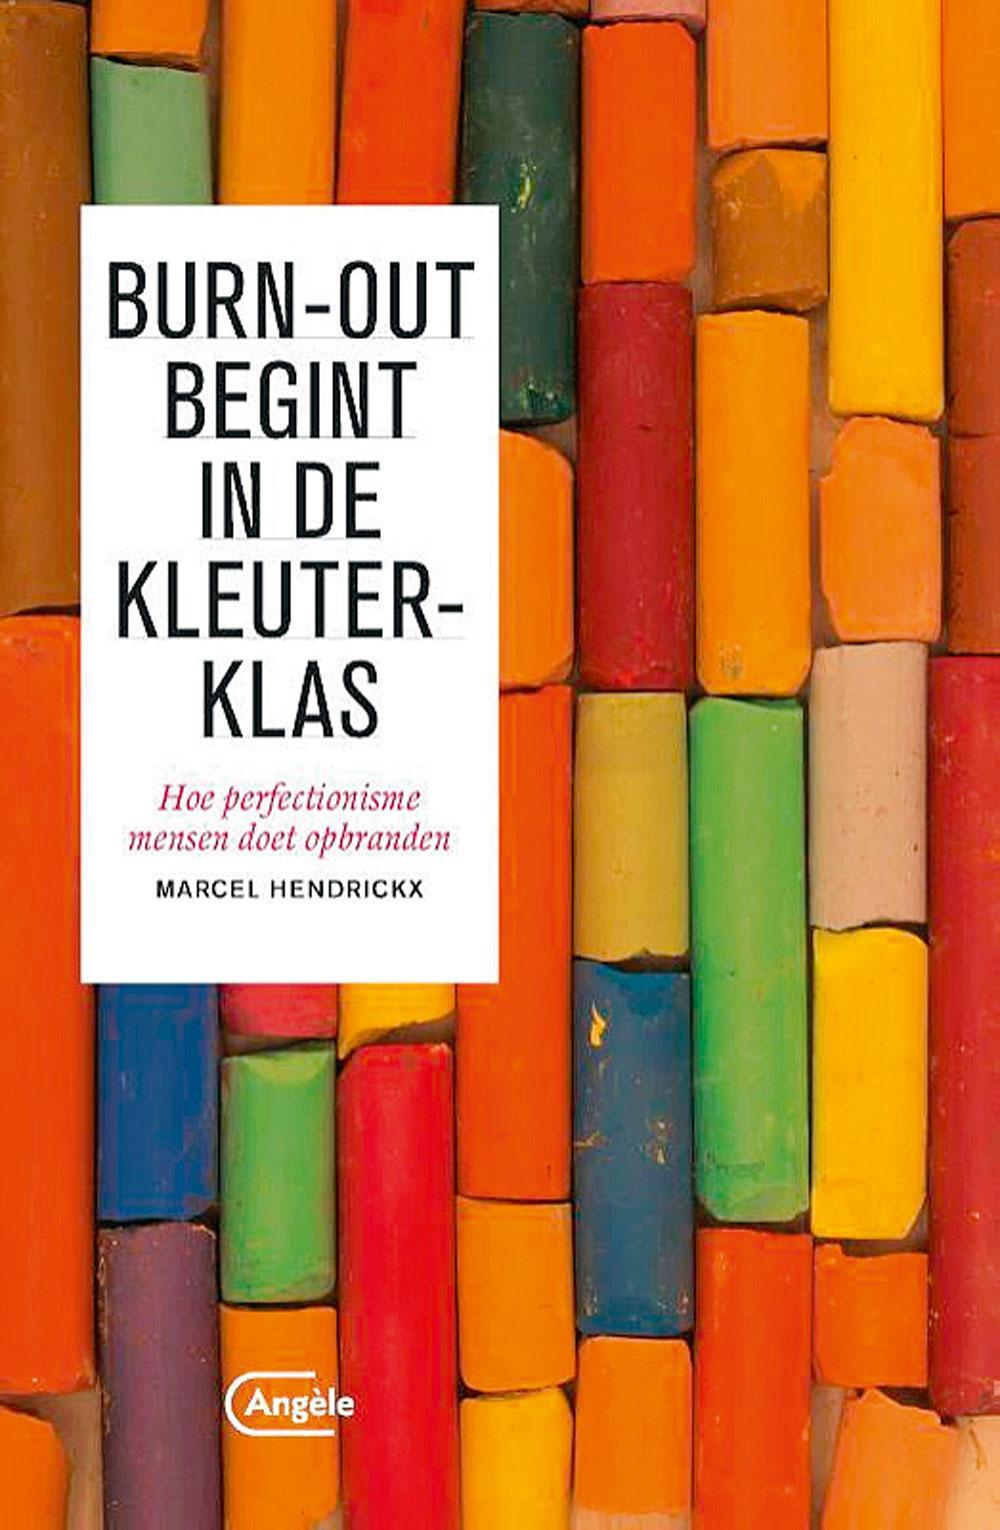 Marcel Hendrickx, Burn-out begint in de kleuterklas, Uitgeverij Angèle, 220 blz., 19,99 euro. Meer info op www.bevrijdjezelf.be en www.nipc.nl.